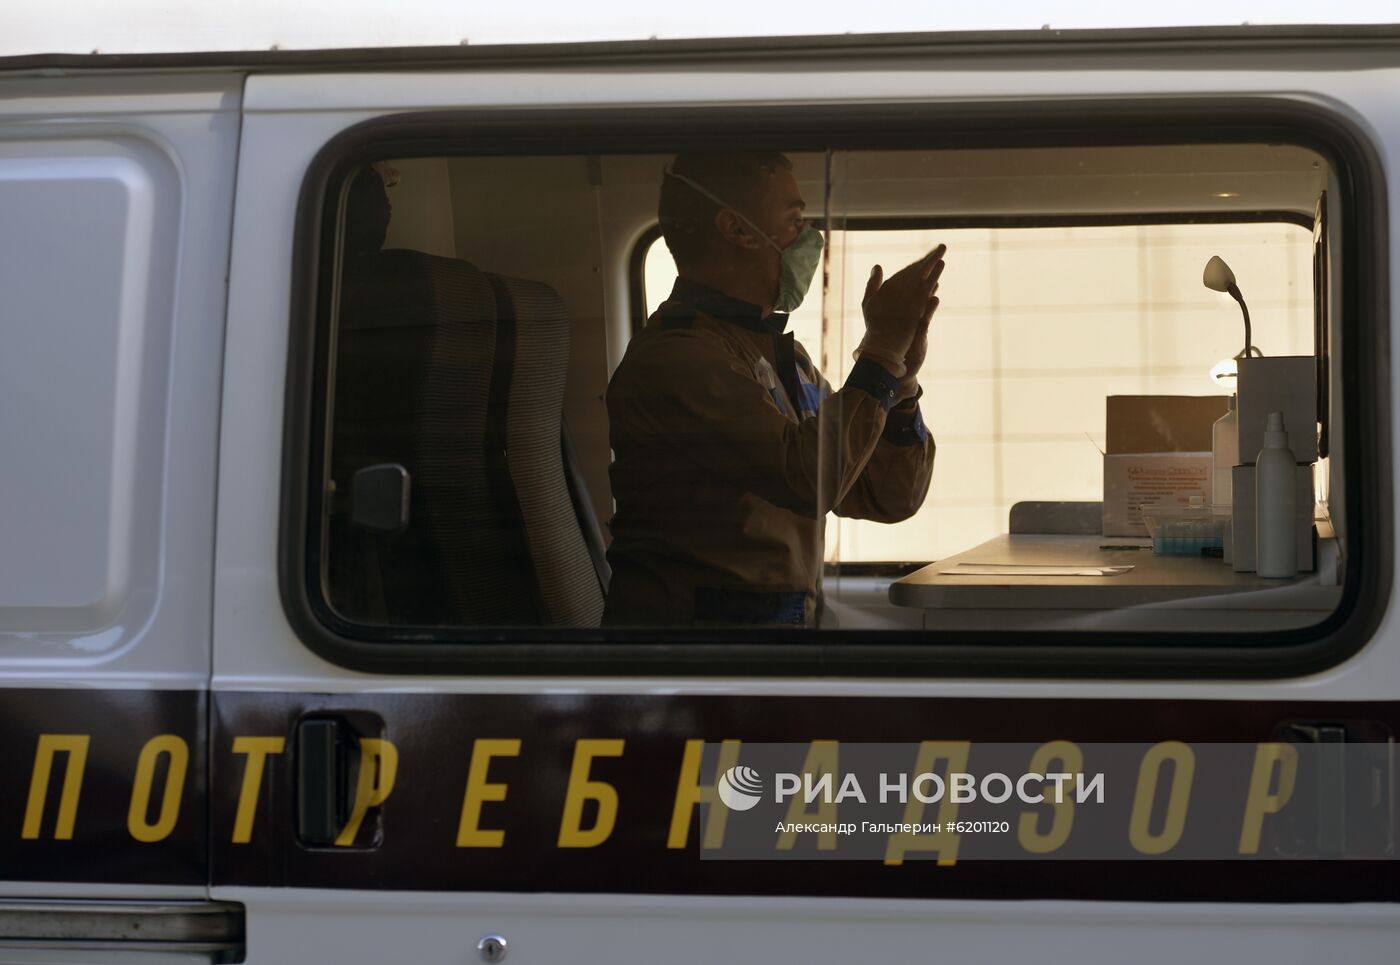 Мобильный пункт тестирования на коронавирус открыли в "Пулково"